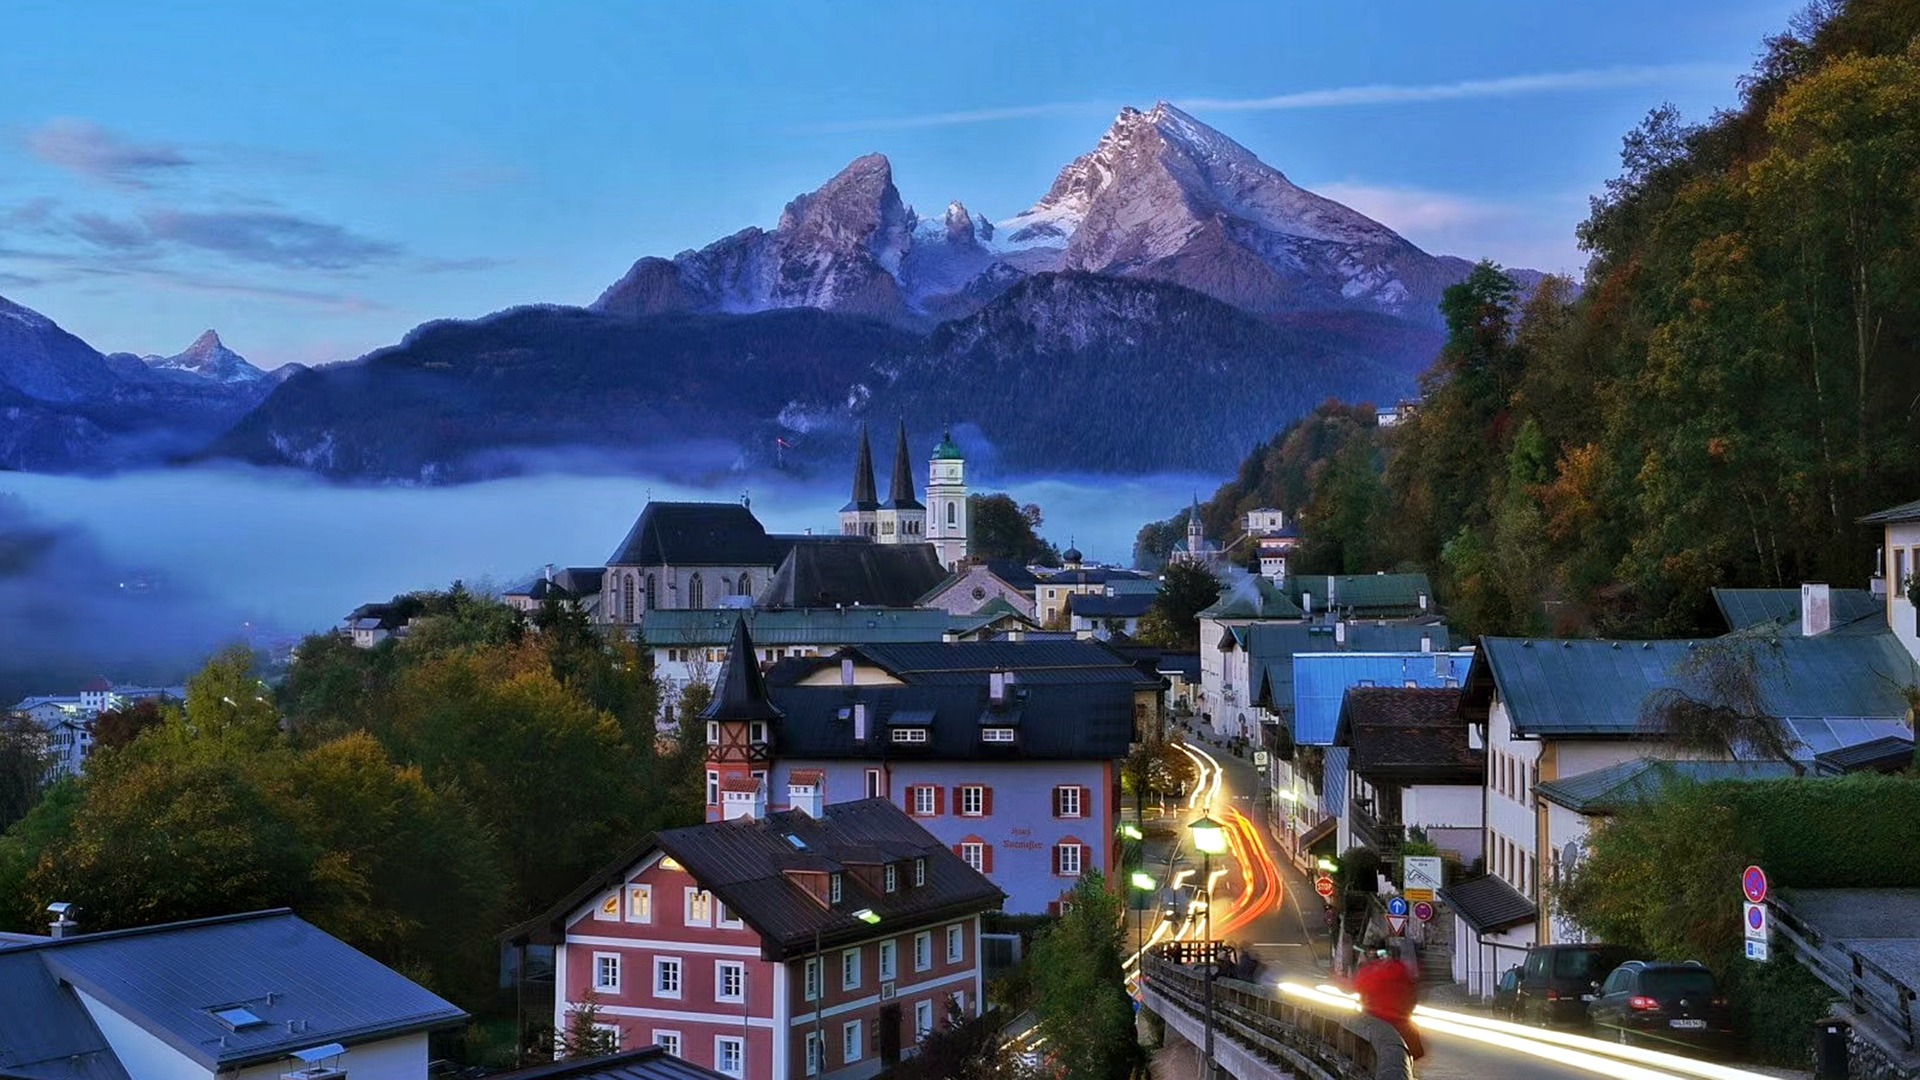 Welke kleine stad of welk dorp is de meest populaire bestemming in Duitsland?